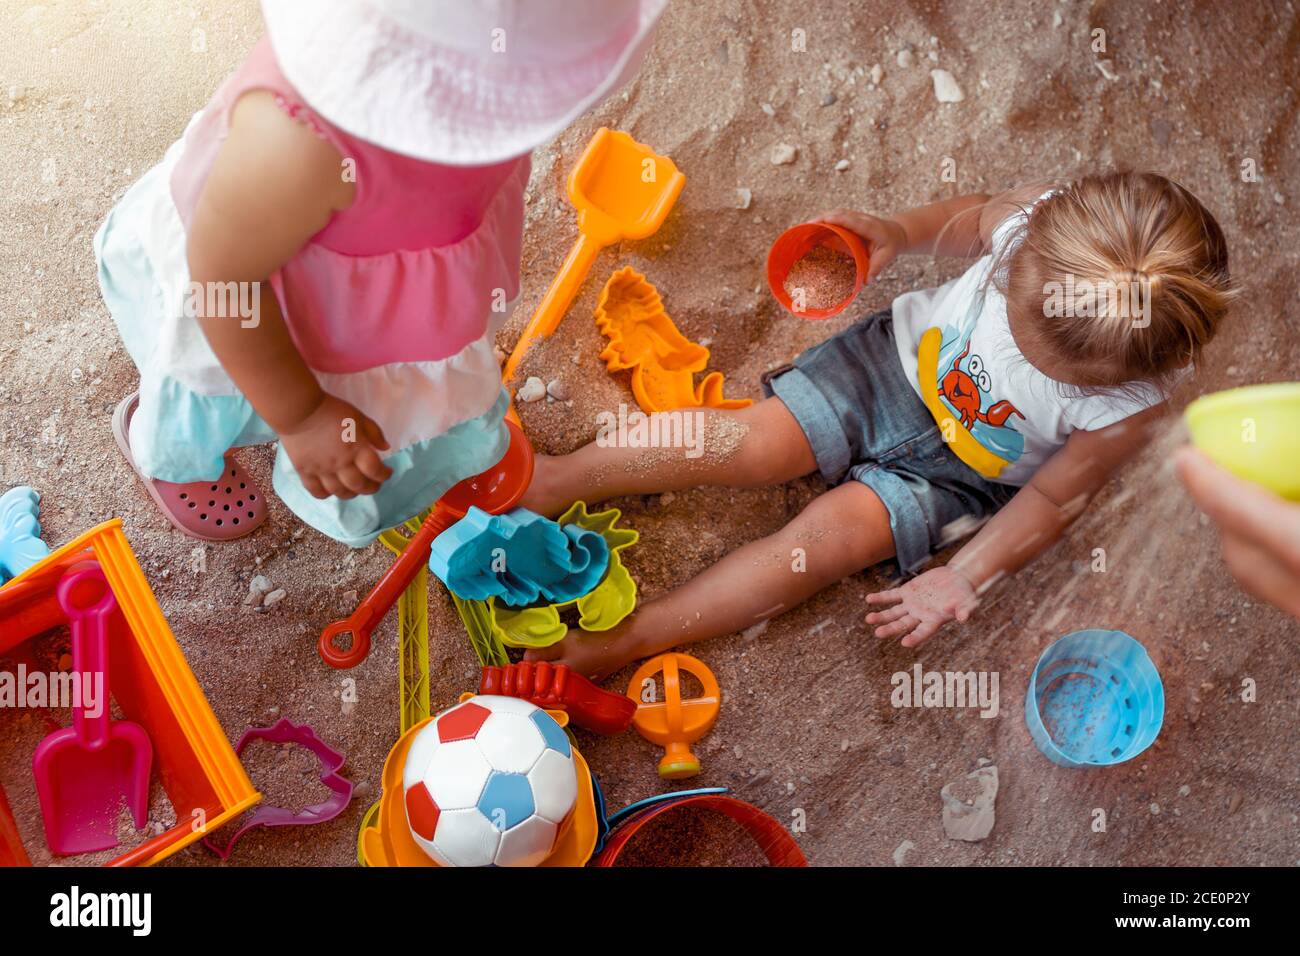 Dos niños pequeños felices jugando con diferentes juguetes coloridos en Sandbox. Con placer vacaciones de verano en la playa. Disfrutar de la infancia. Foto de stock